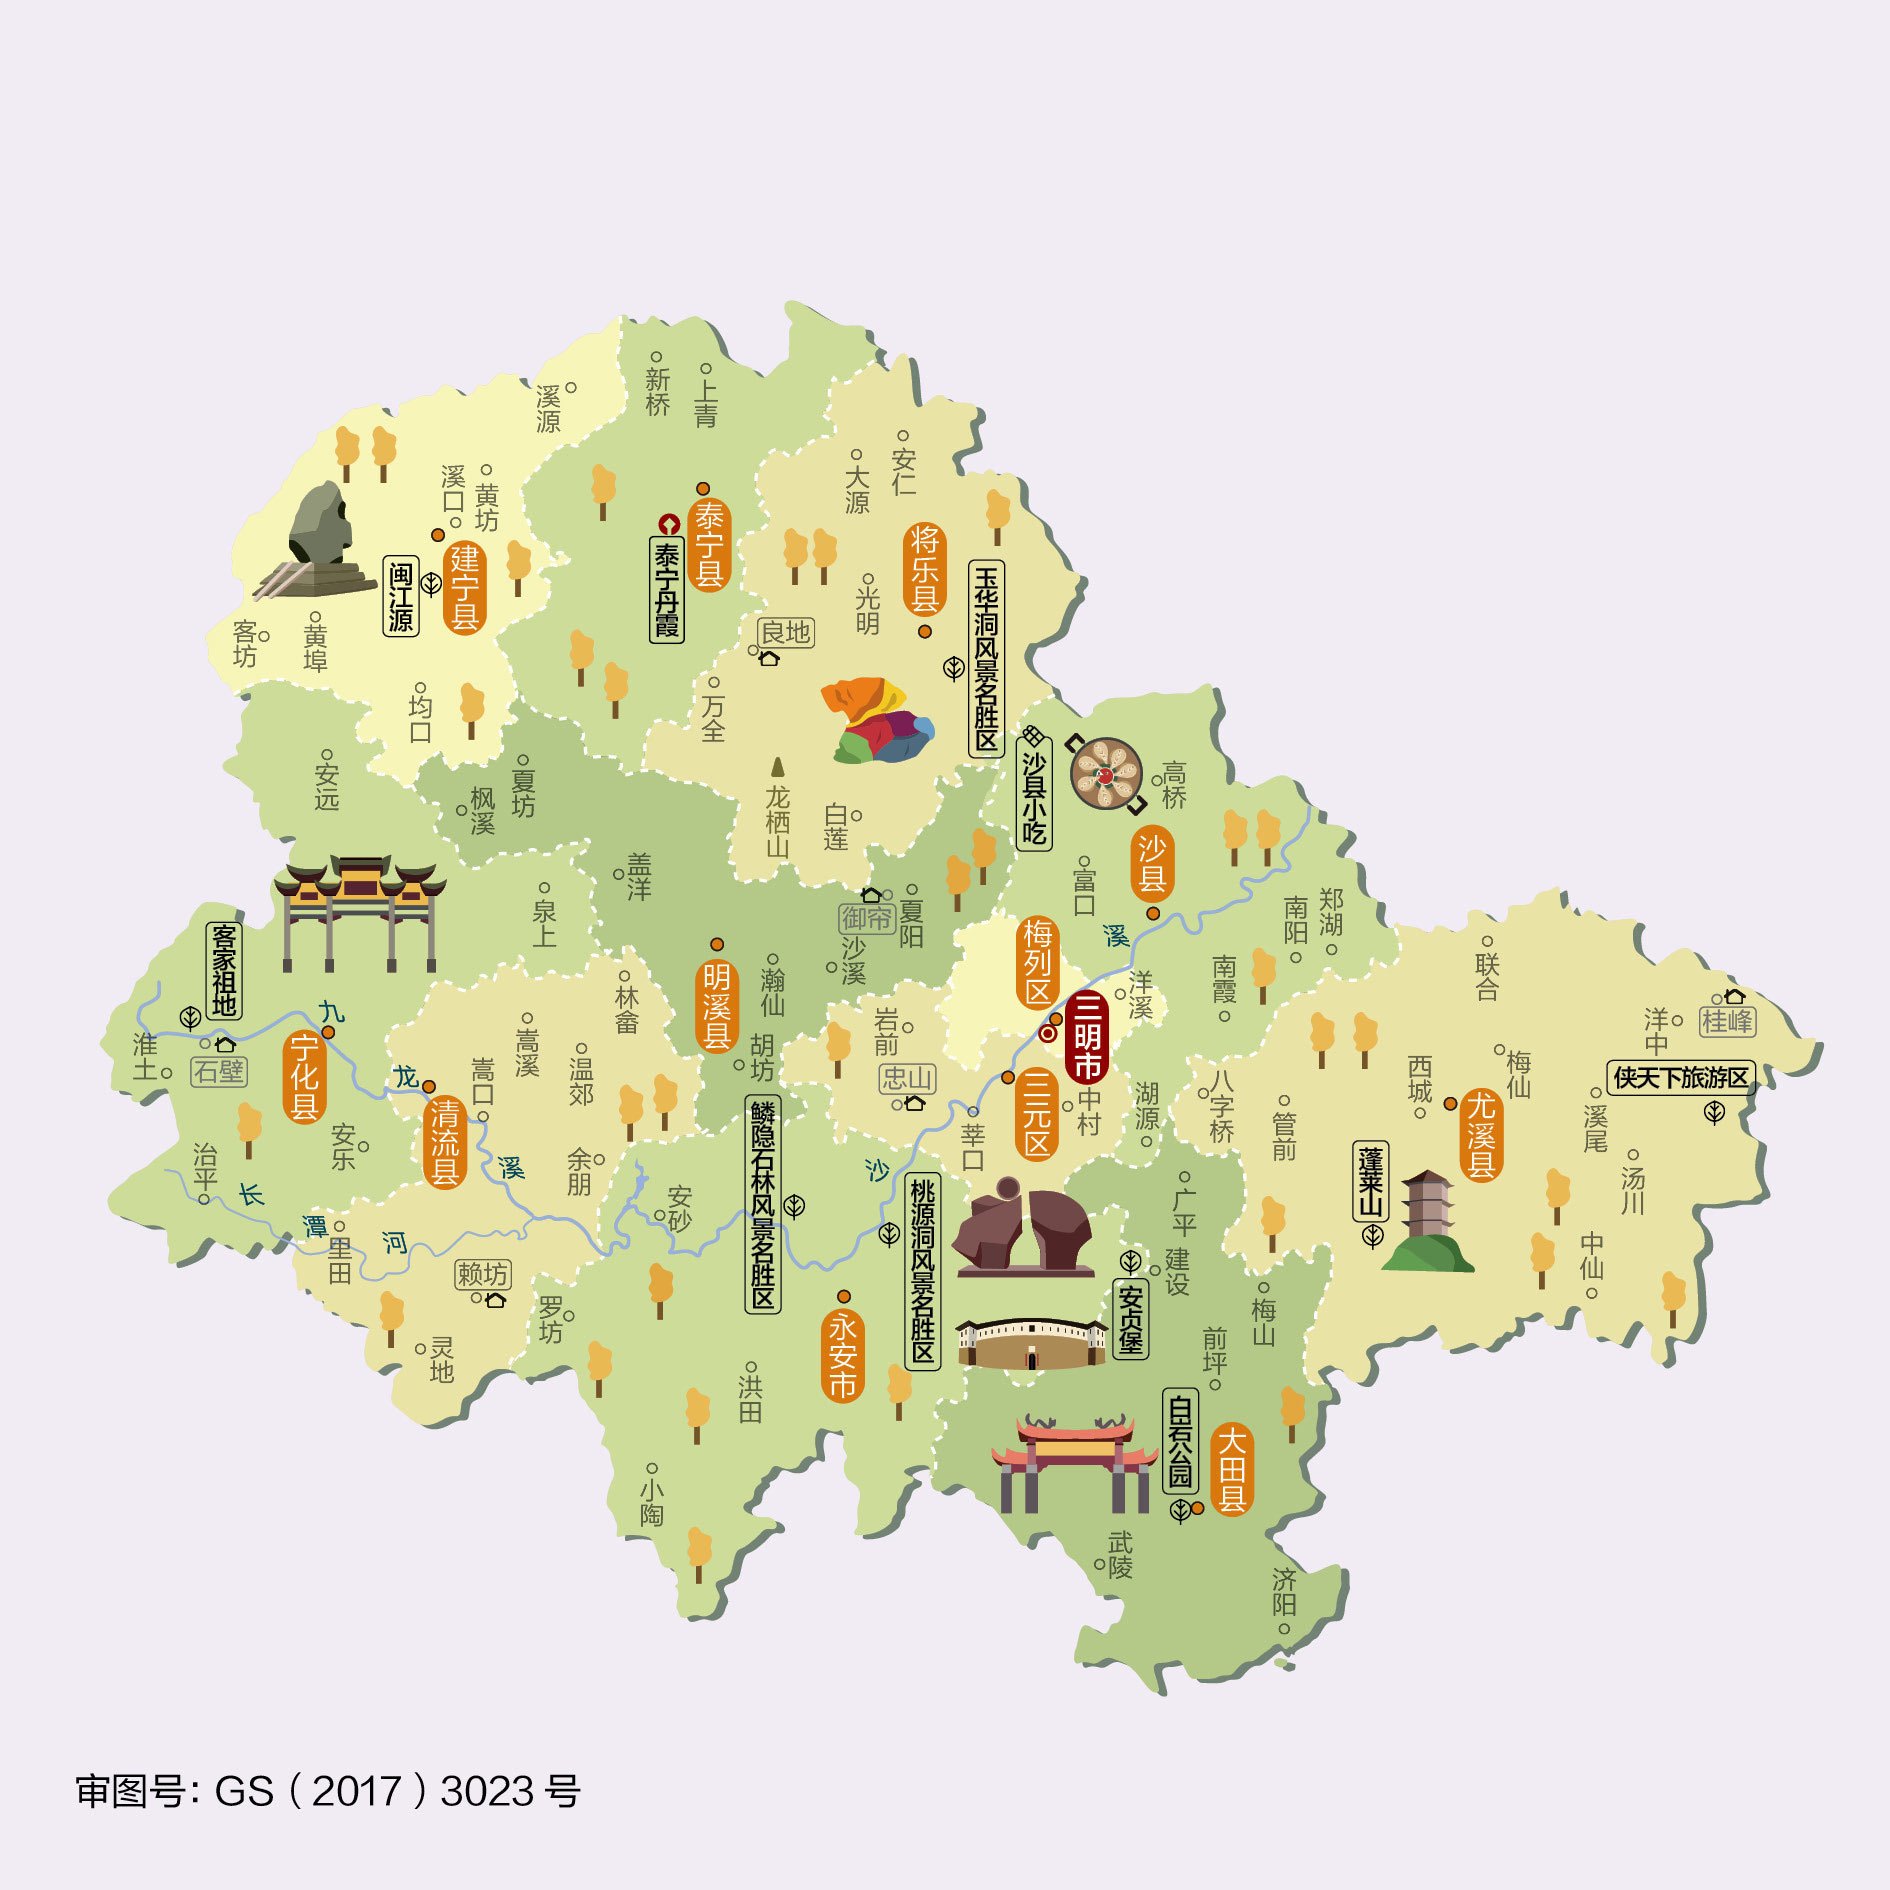 福建省三明市人文地图